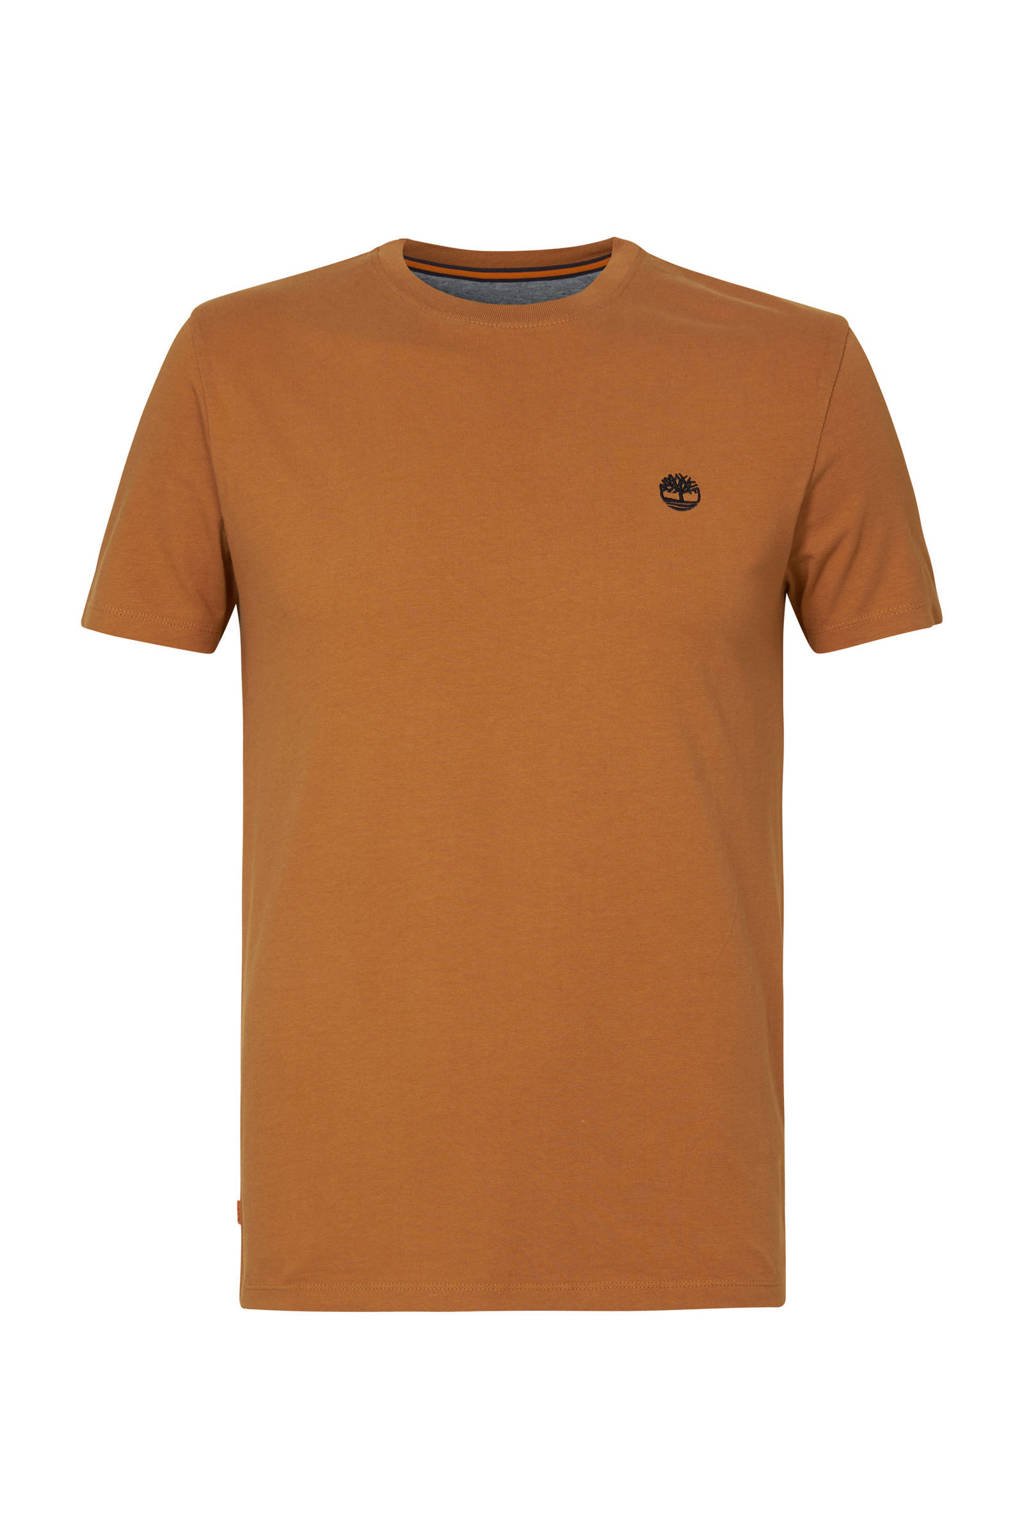 Gele heren Timberland T-shirt katoen met logo dessin, korte mouwen en ronde hals